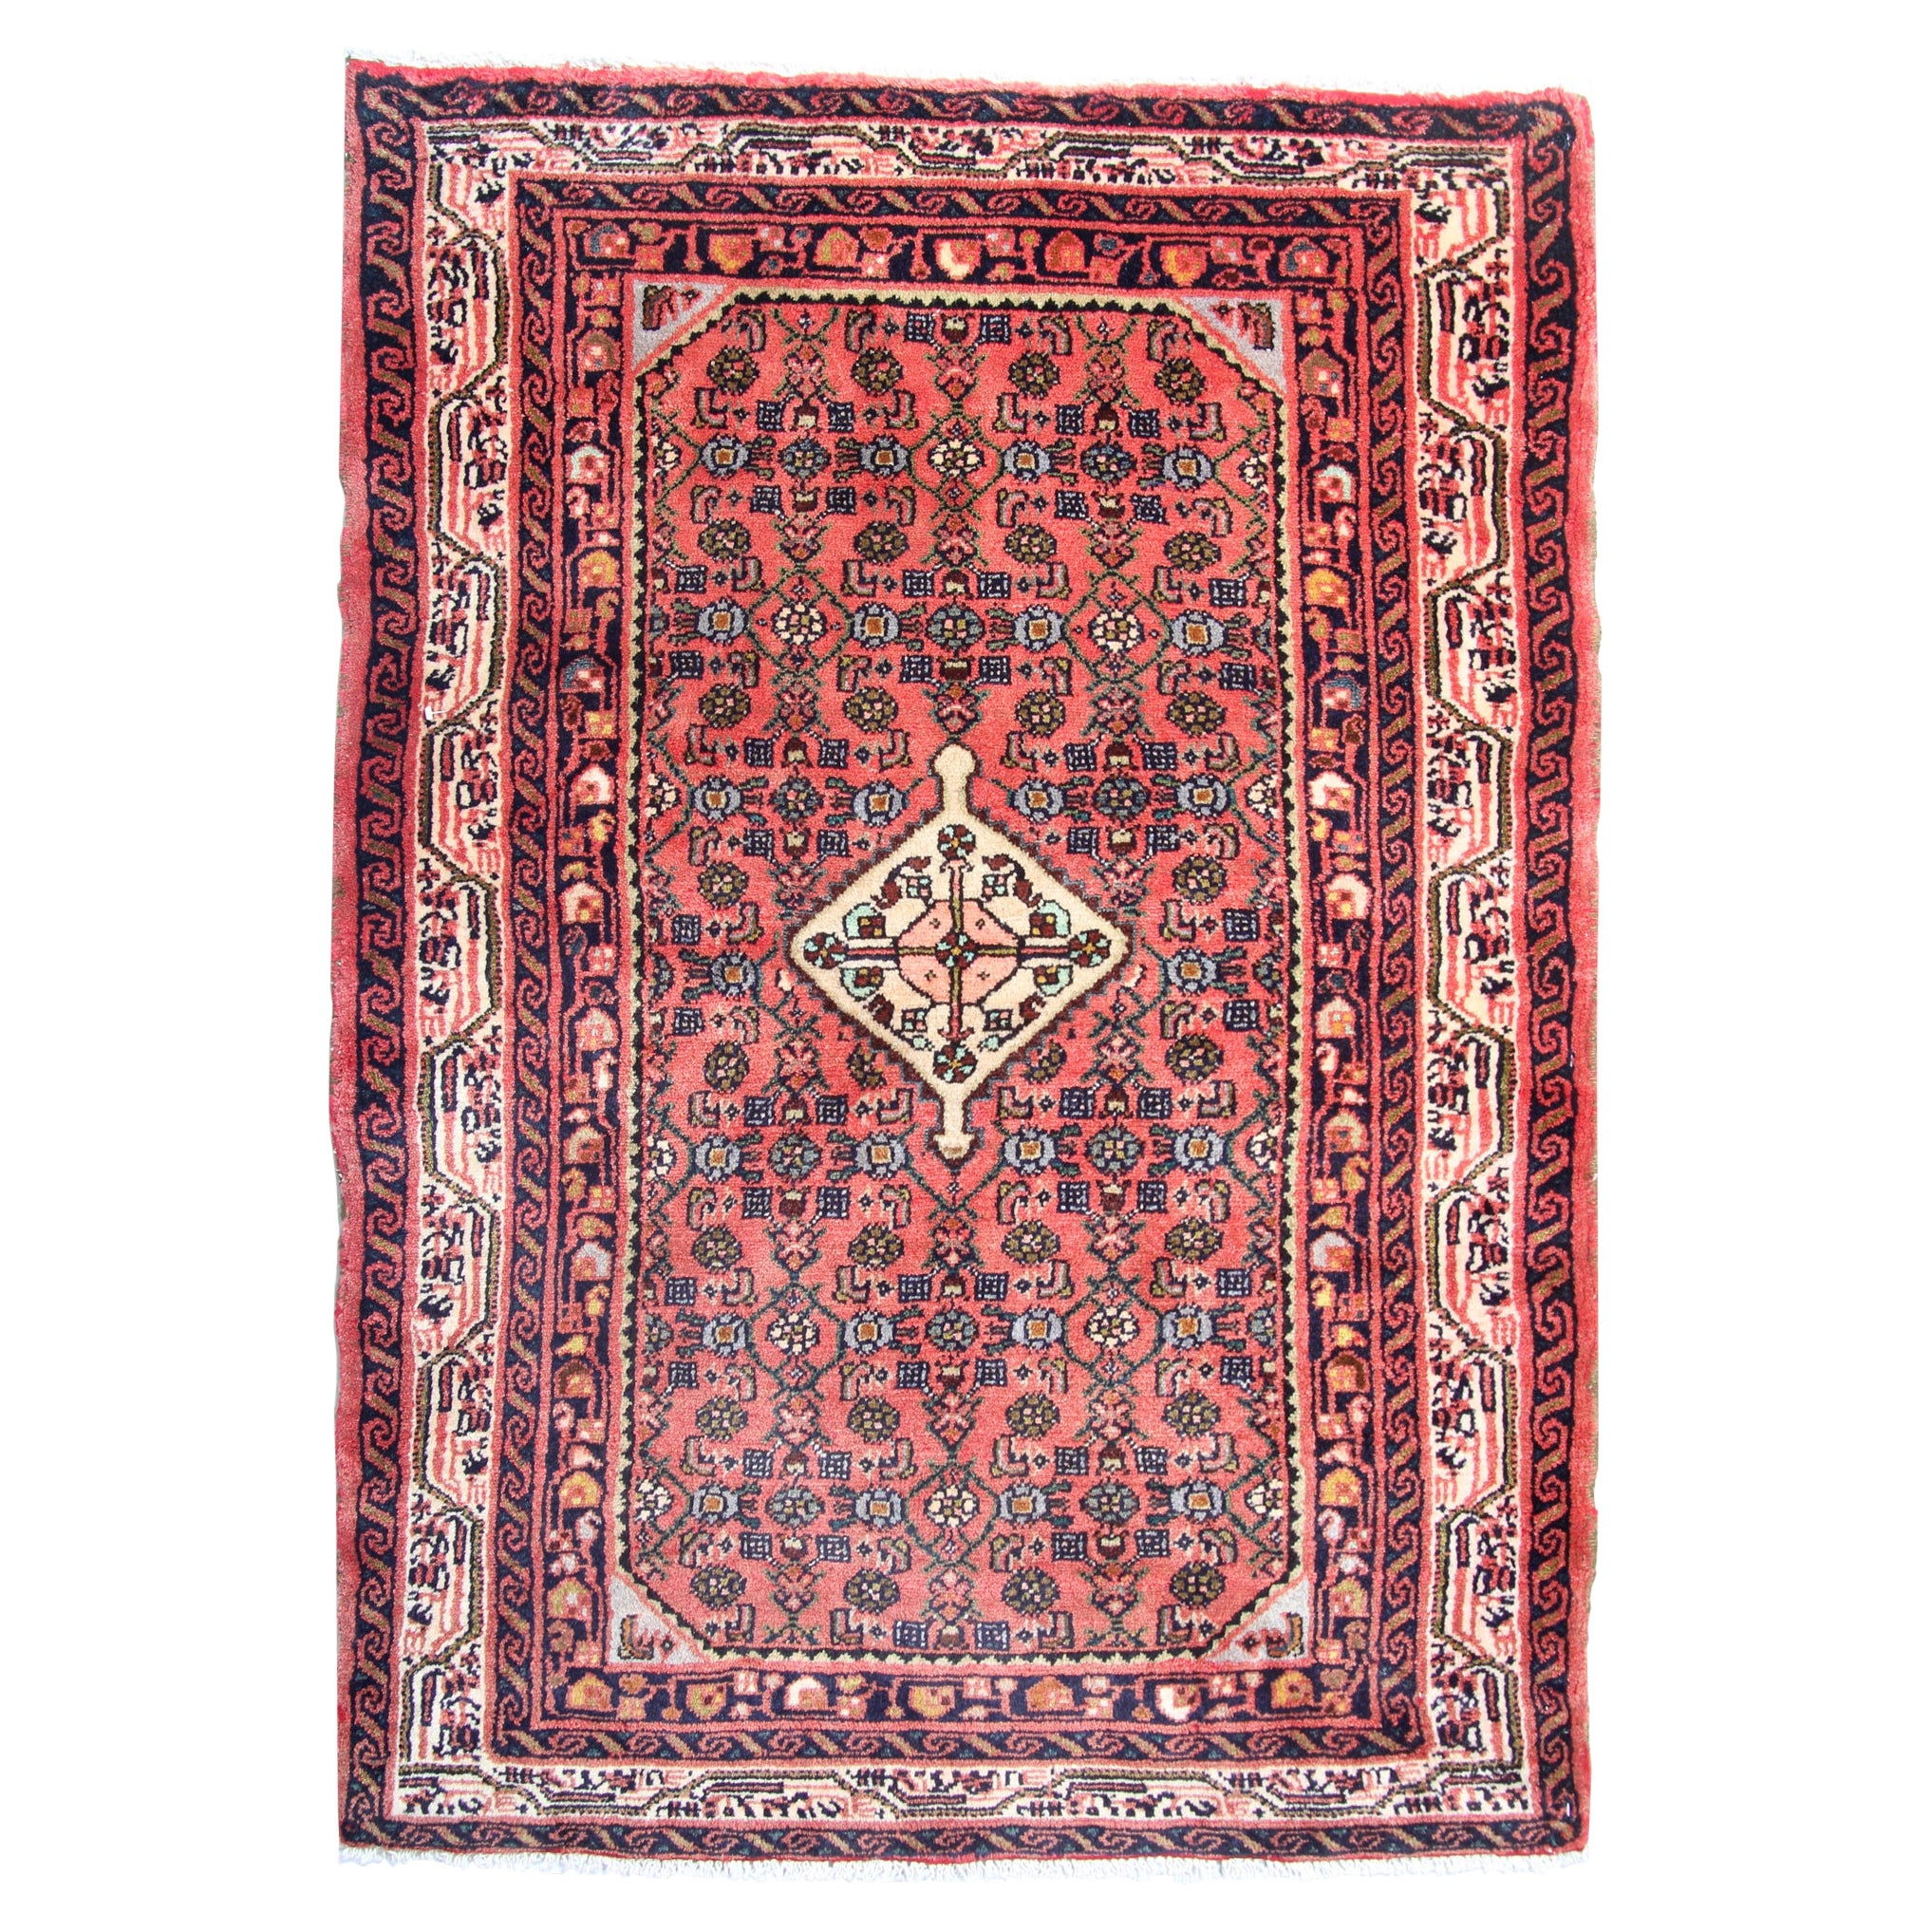 Rustikaler handgefertigter rustikaler Vintage-Teppich, traditioneller türkischer Teppich aus roter und rosa Wolle